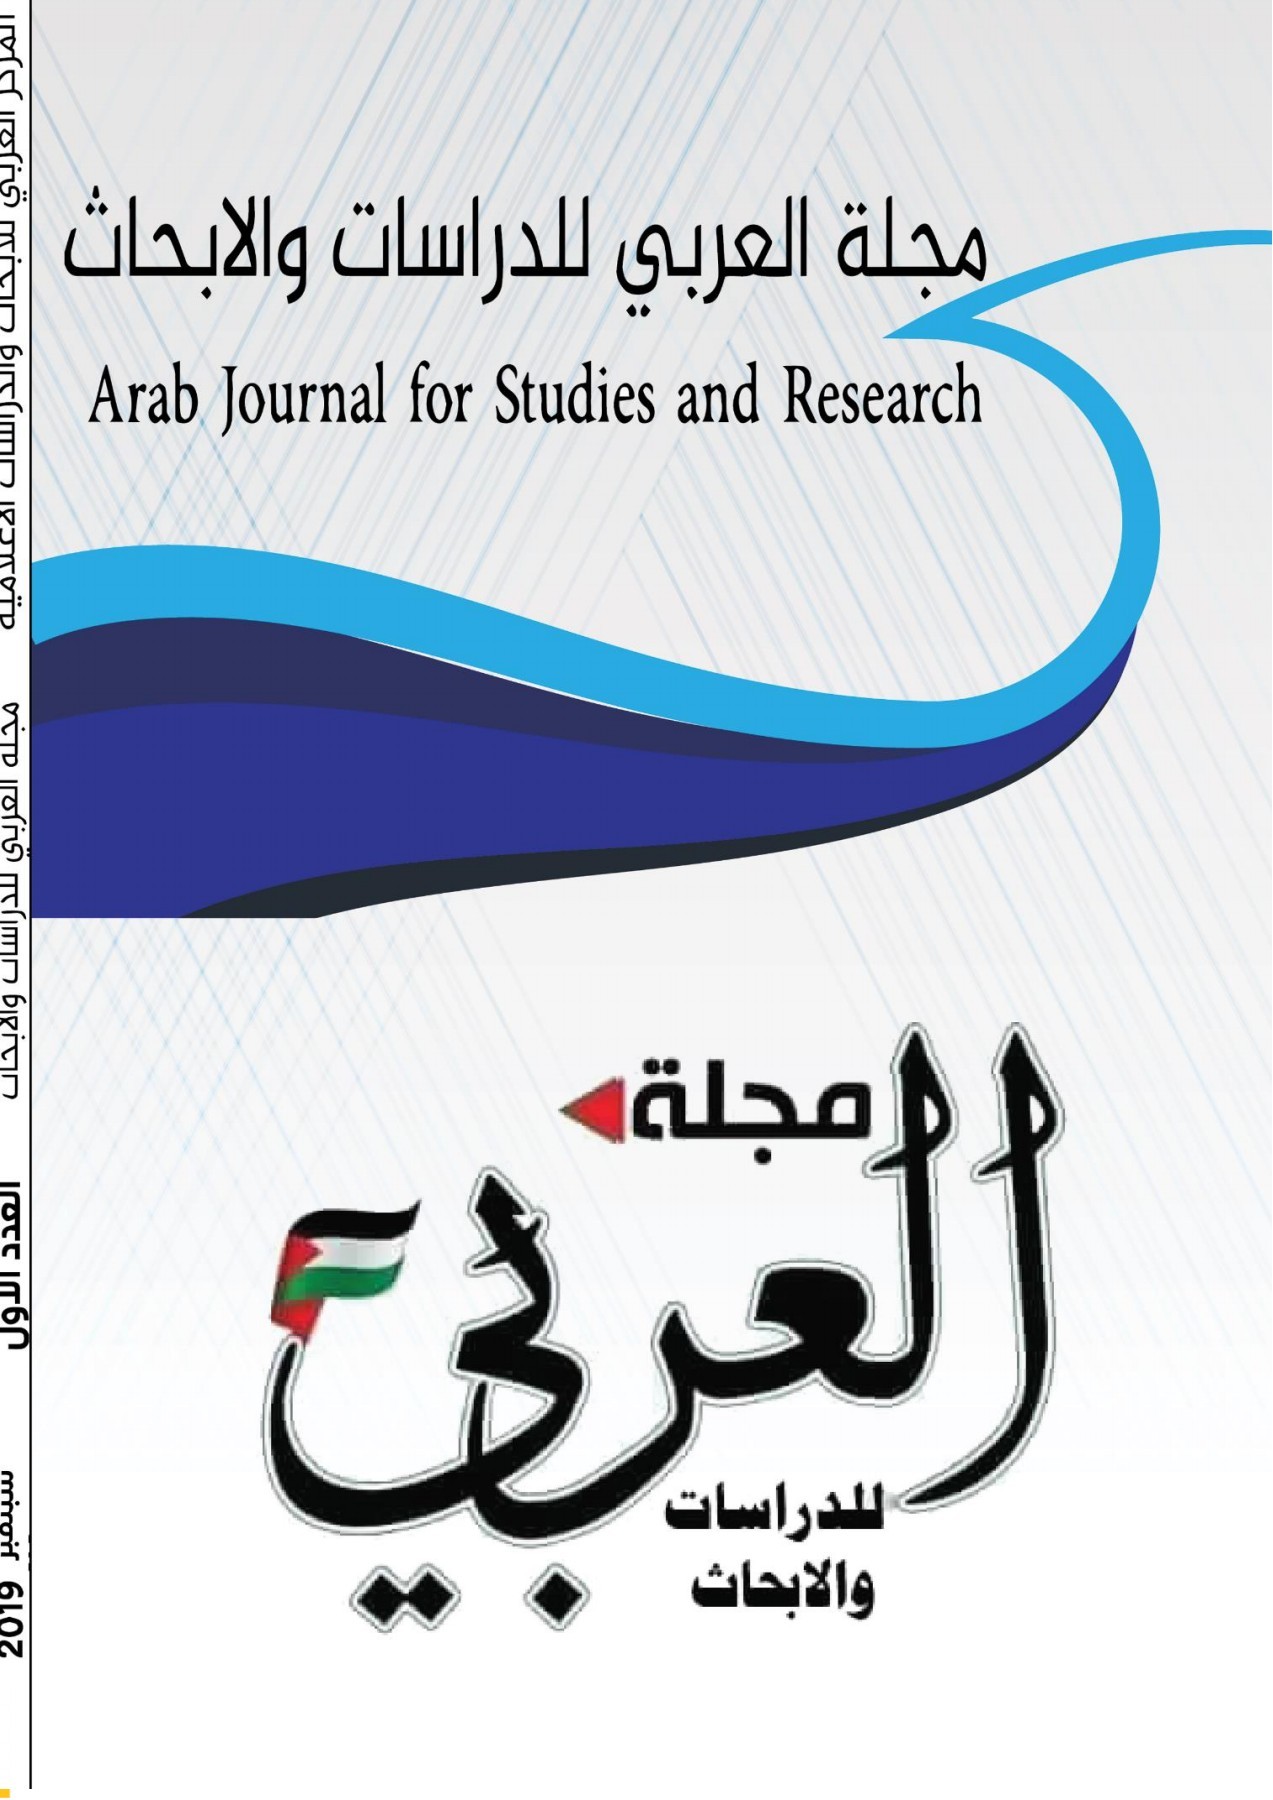 دعوة للكتابة في العدد الثاني  من مجلة العربي للدراسات والابحاث